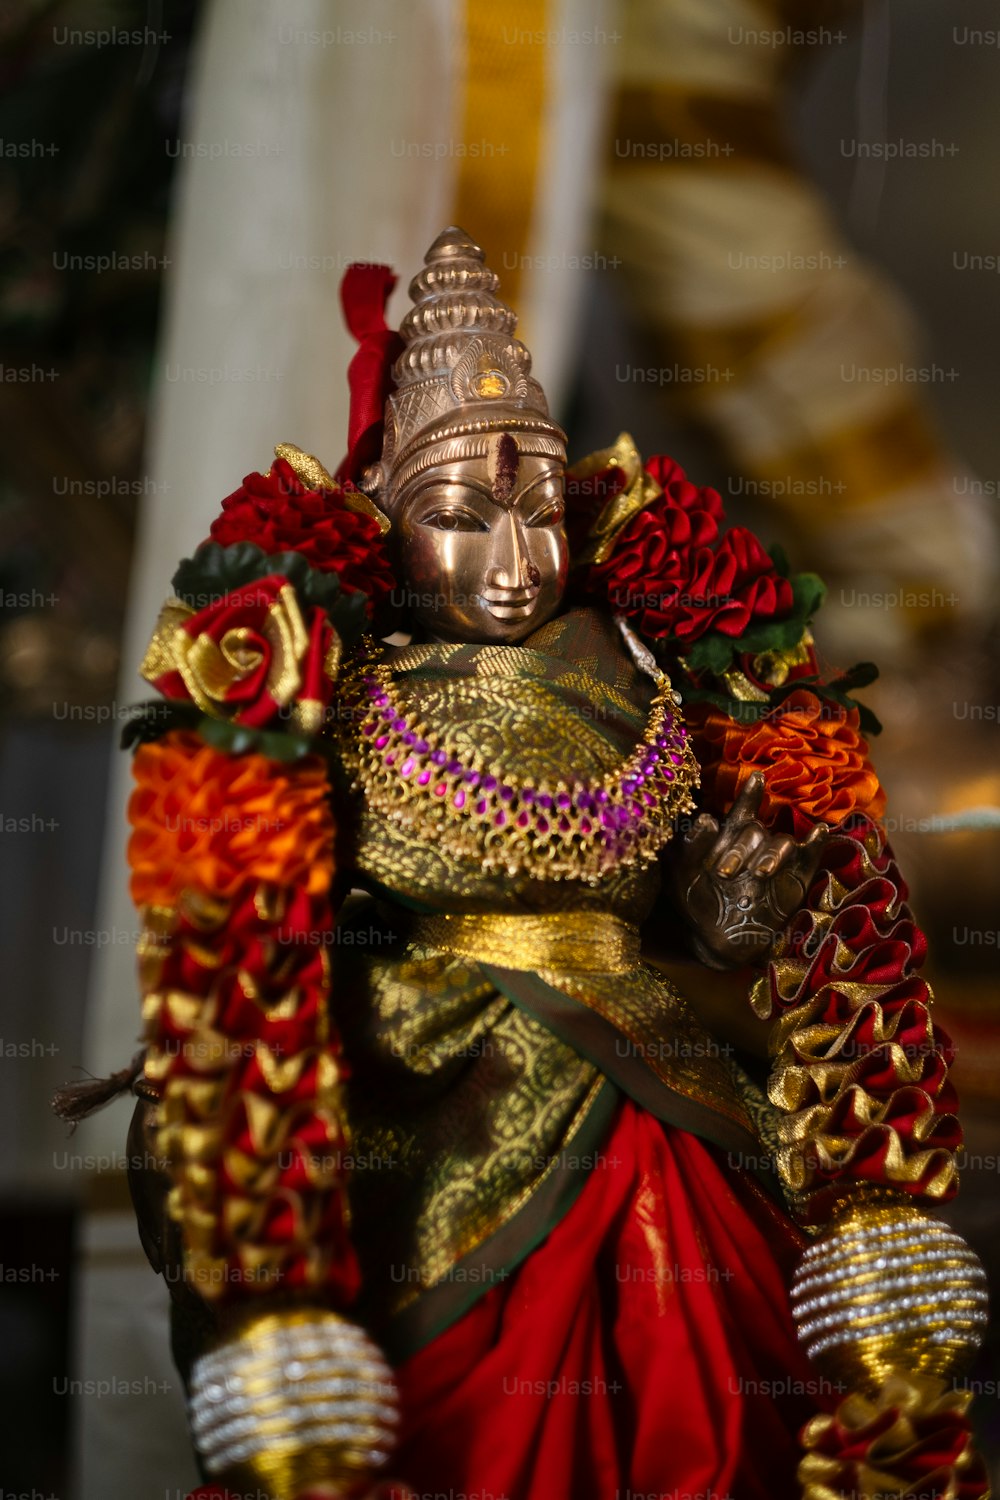 uma estátua de uma pessoa em uma roupa vermelha e dourada